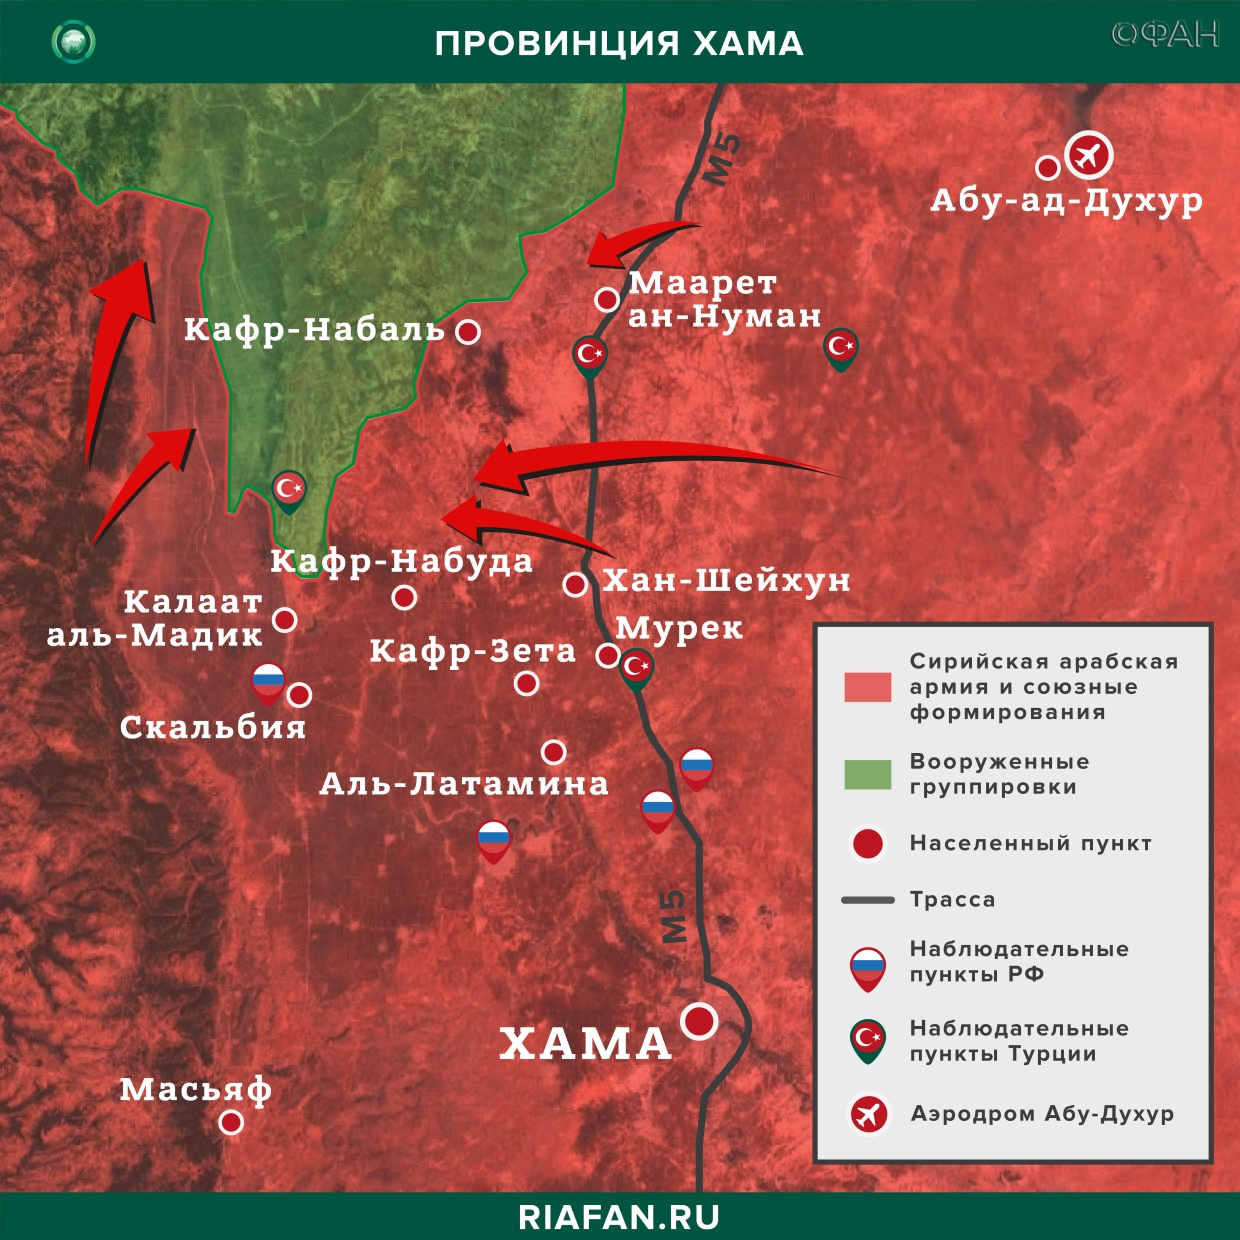 Noticias de Siria 1 Marzo 19.30: сирийские системы ПВО будут сбивать все вражеские цели над Идлибом, провокации боевиков в Даръа